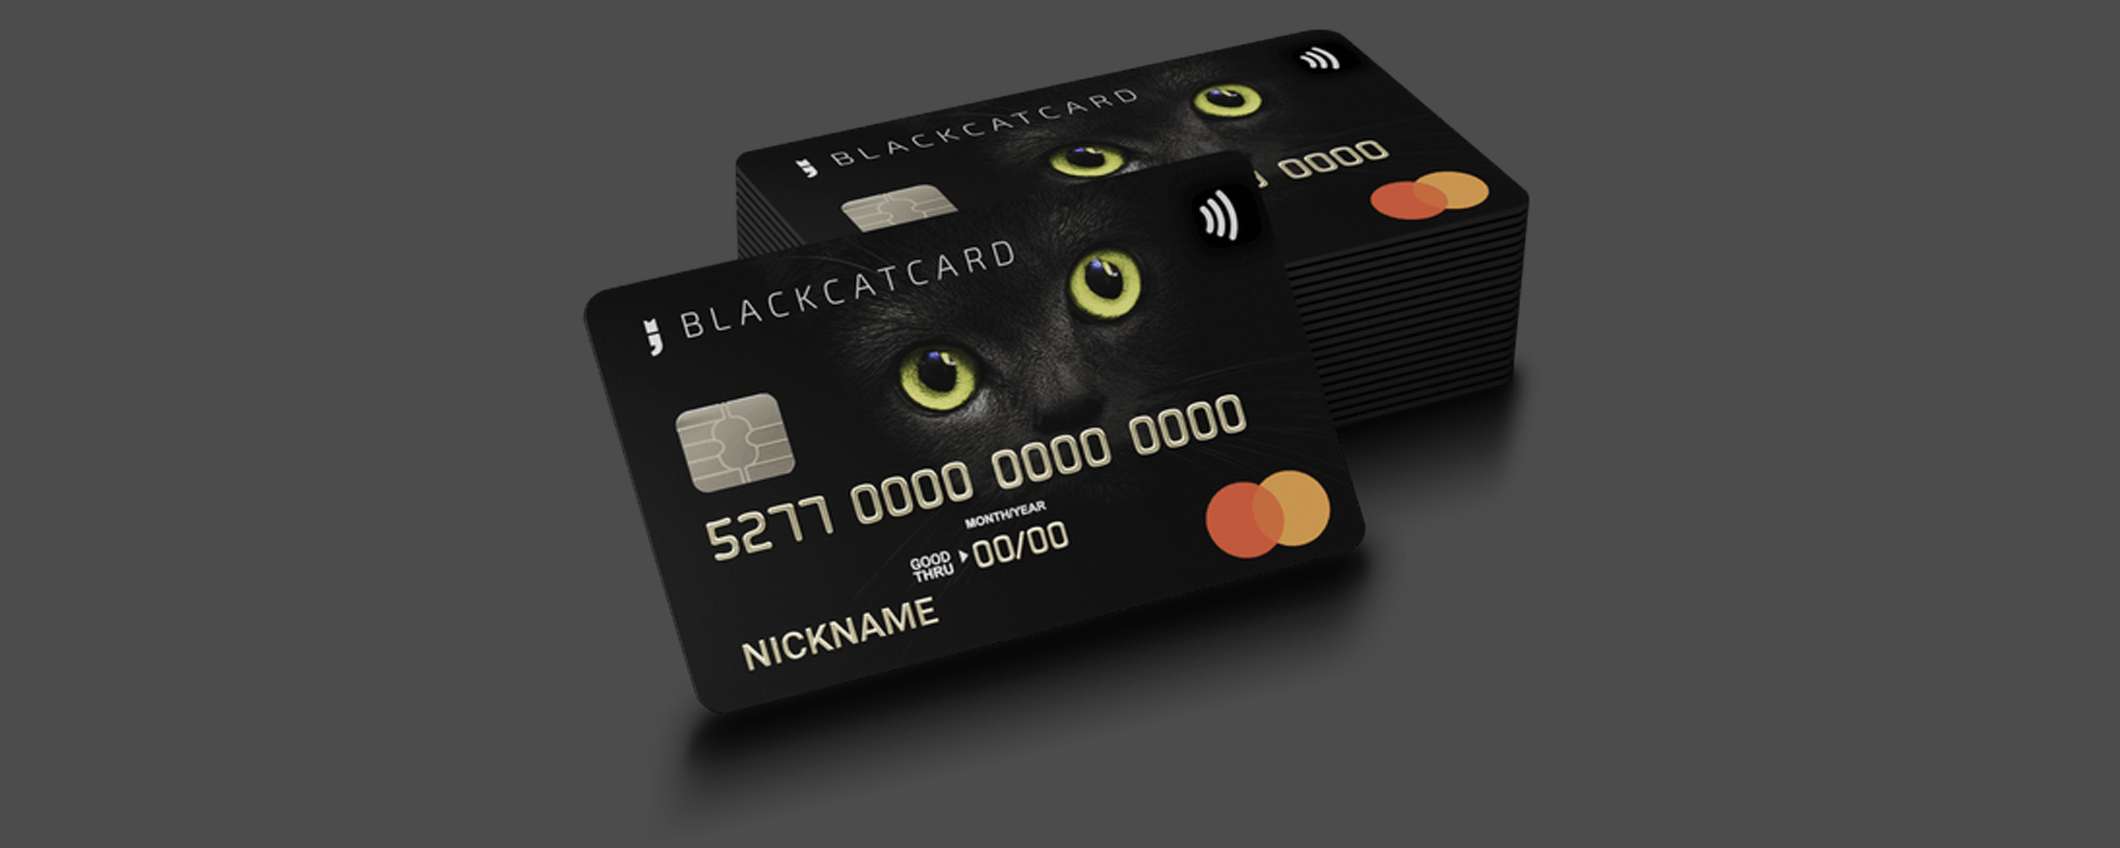 Blackcatcard: il conto senza deposito con rendimento del 4%